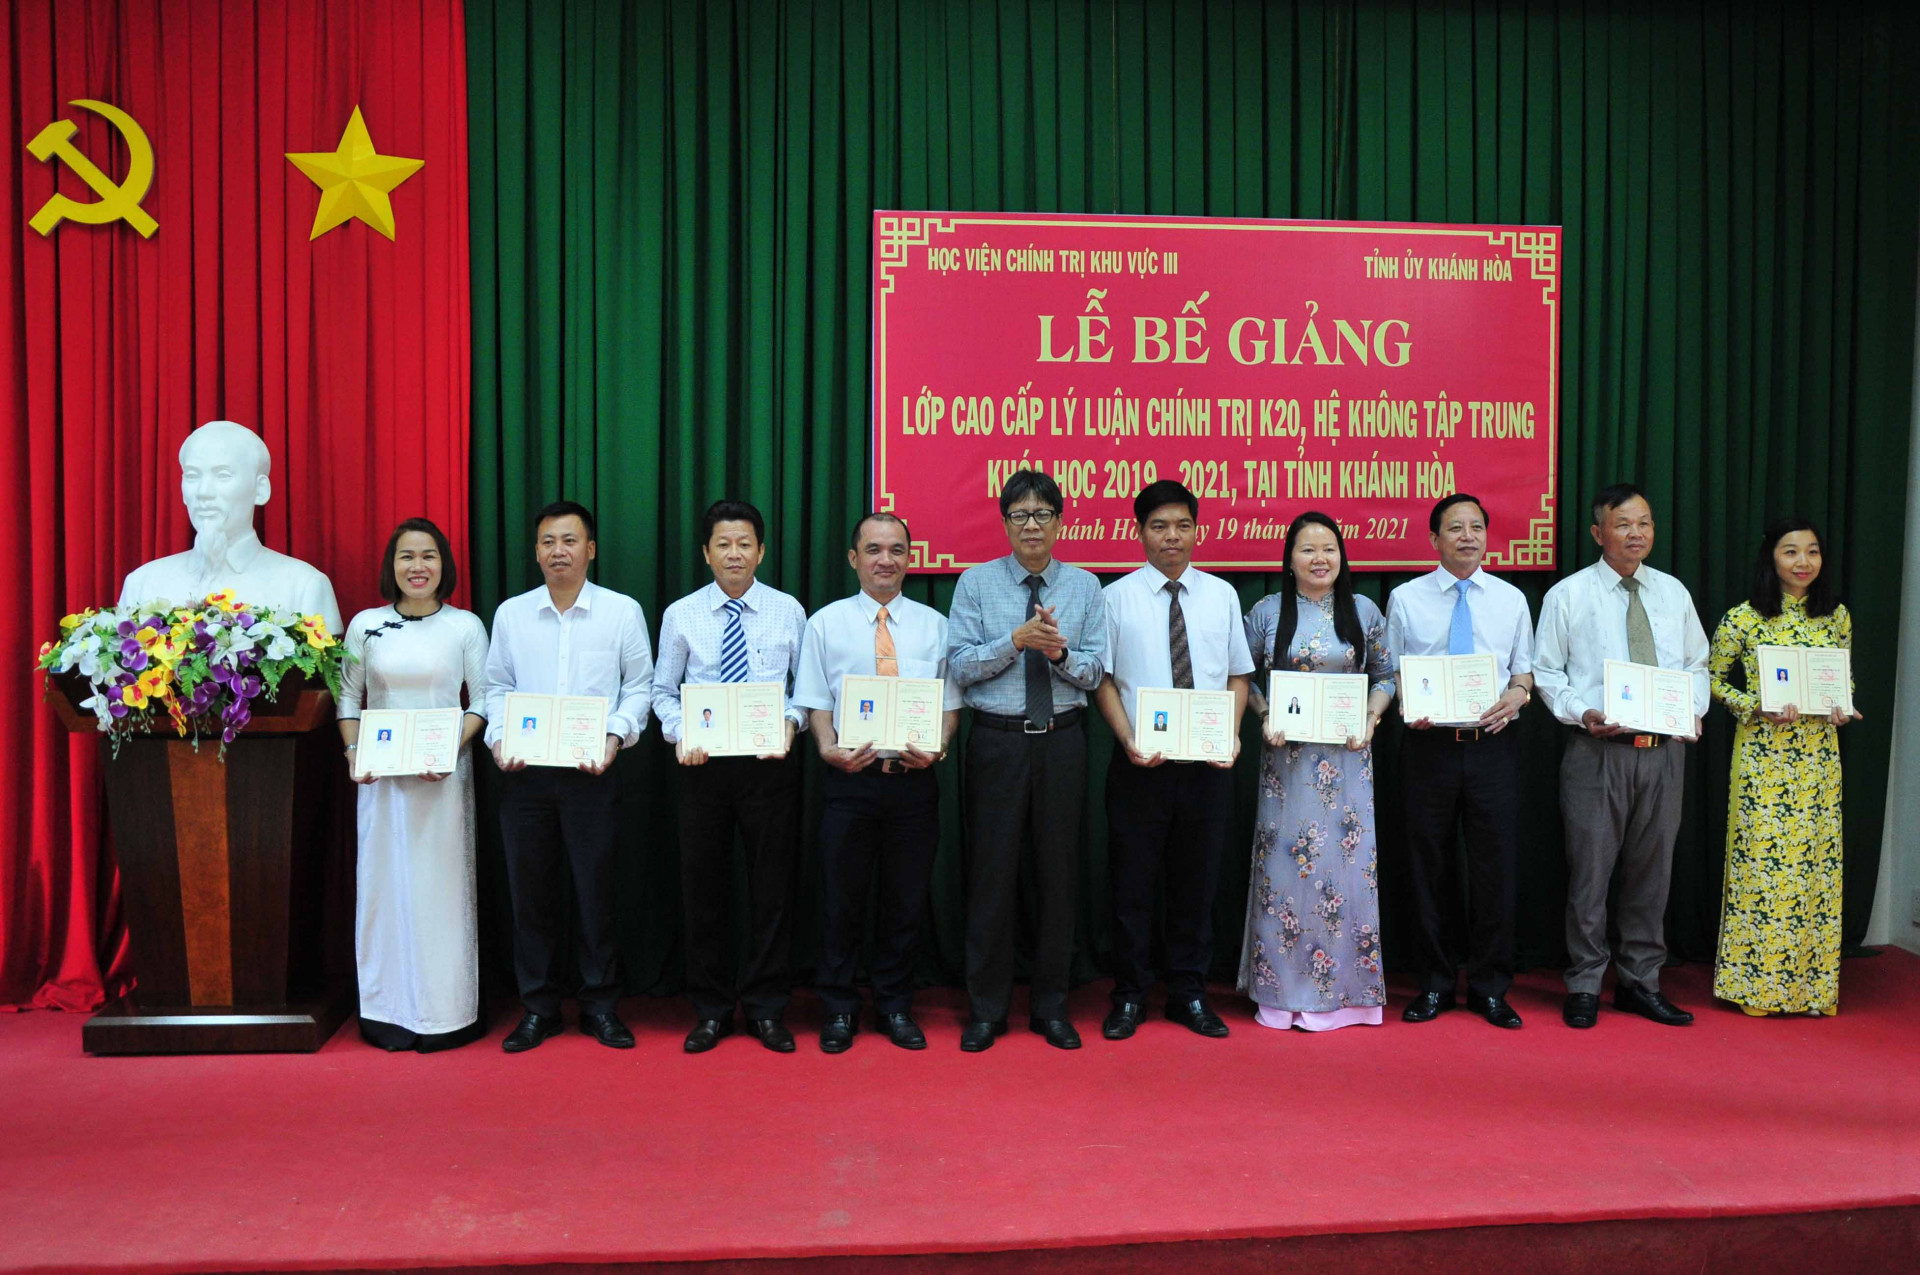 Lãnh đạo Học viện Chính trị khu vực III trao chứng nhận tốt nghiệp cho các học viên